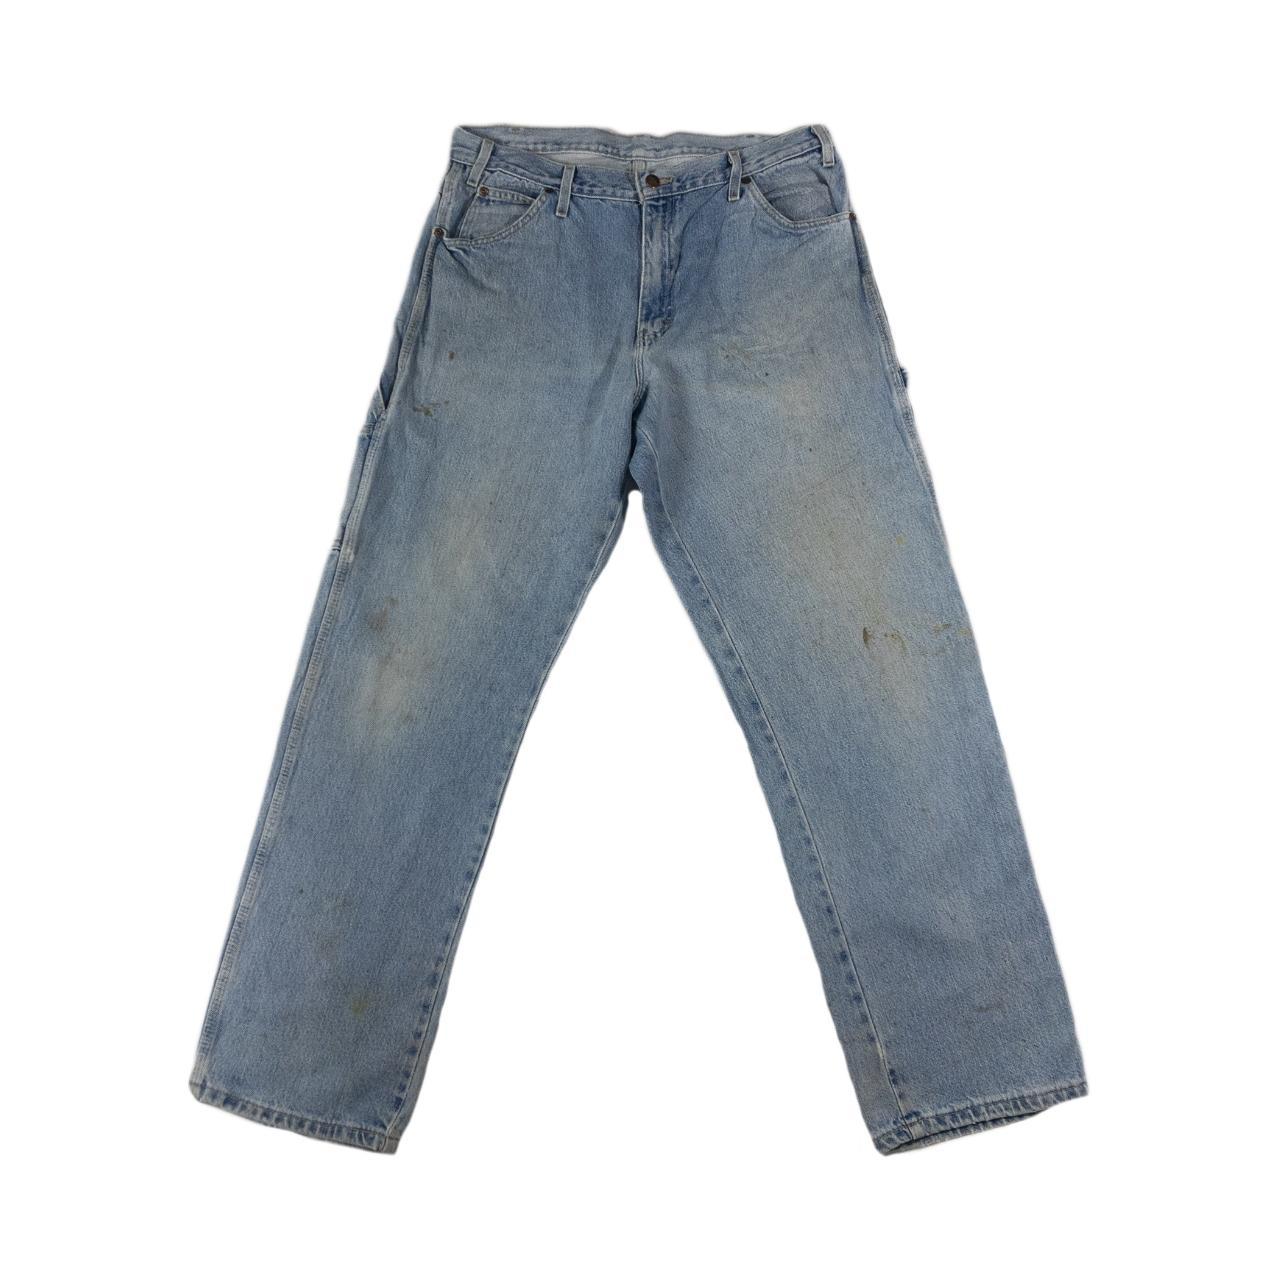 Vintage Dickies Blue Carpenter Jeans Trousers... - Depop